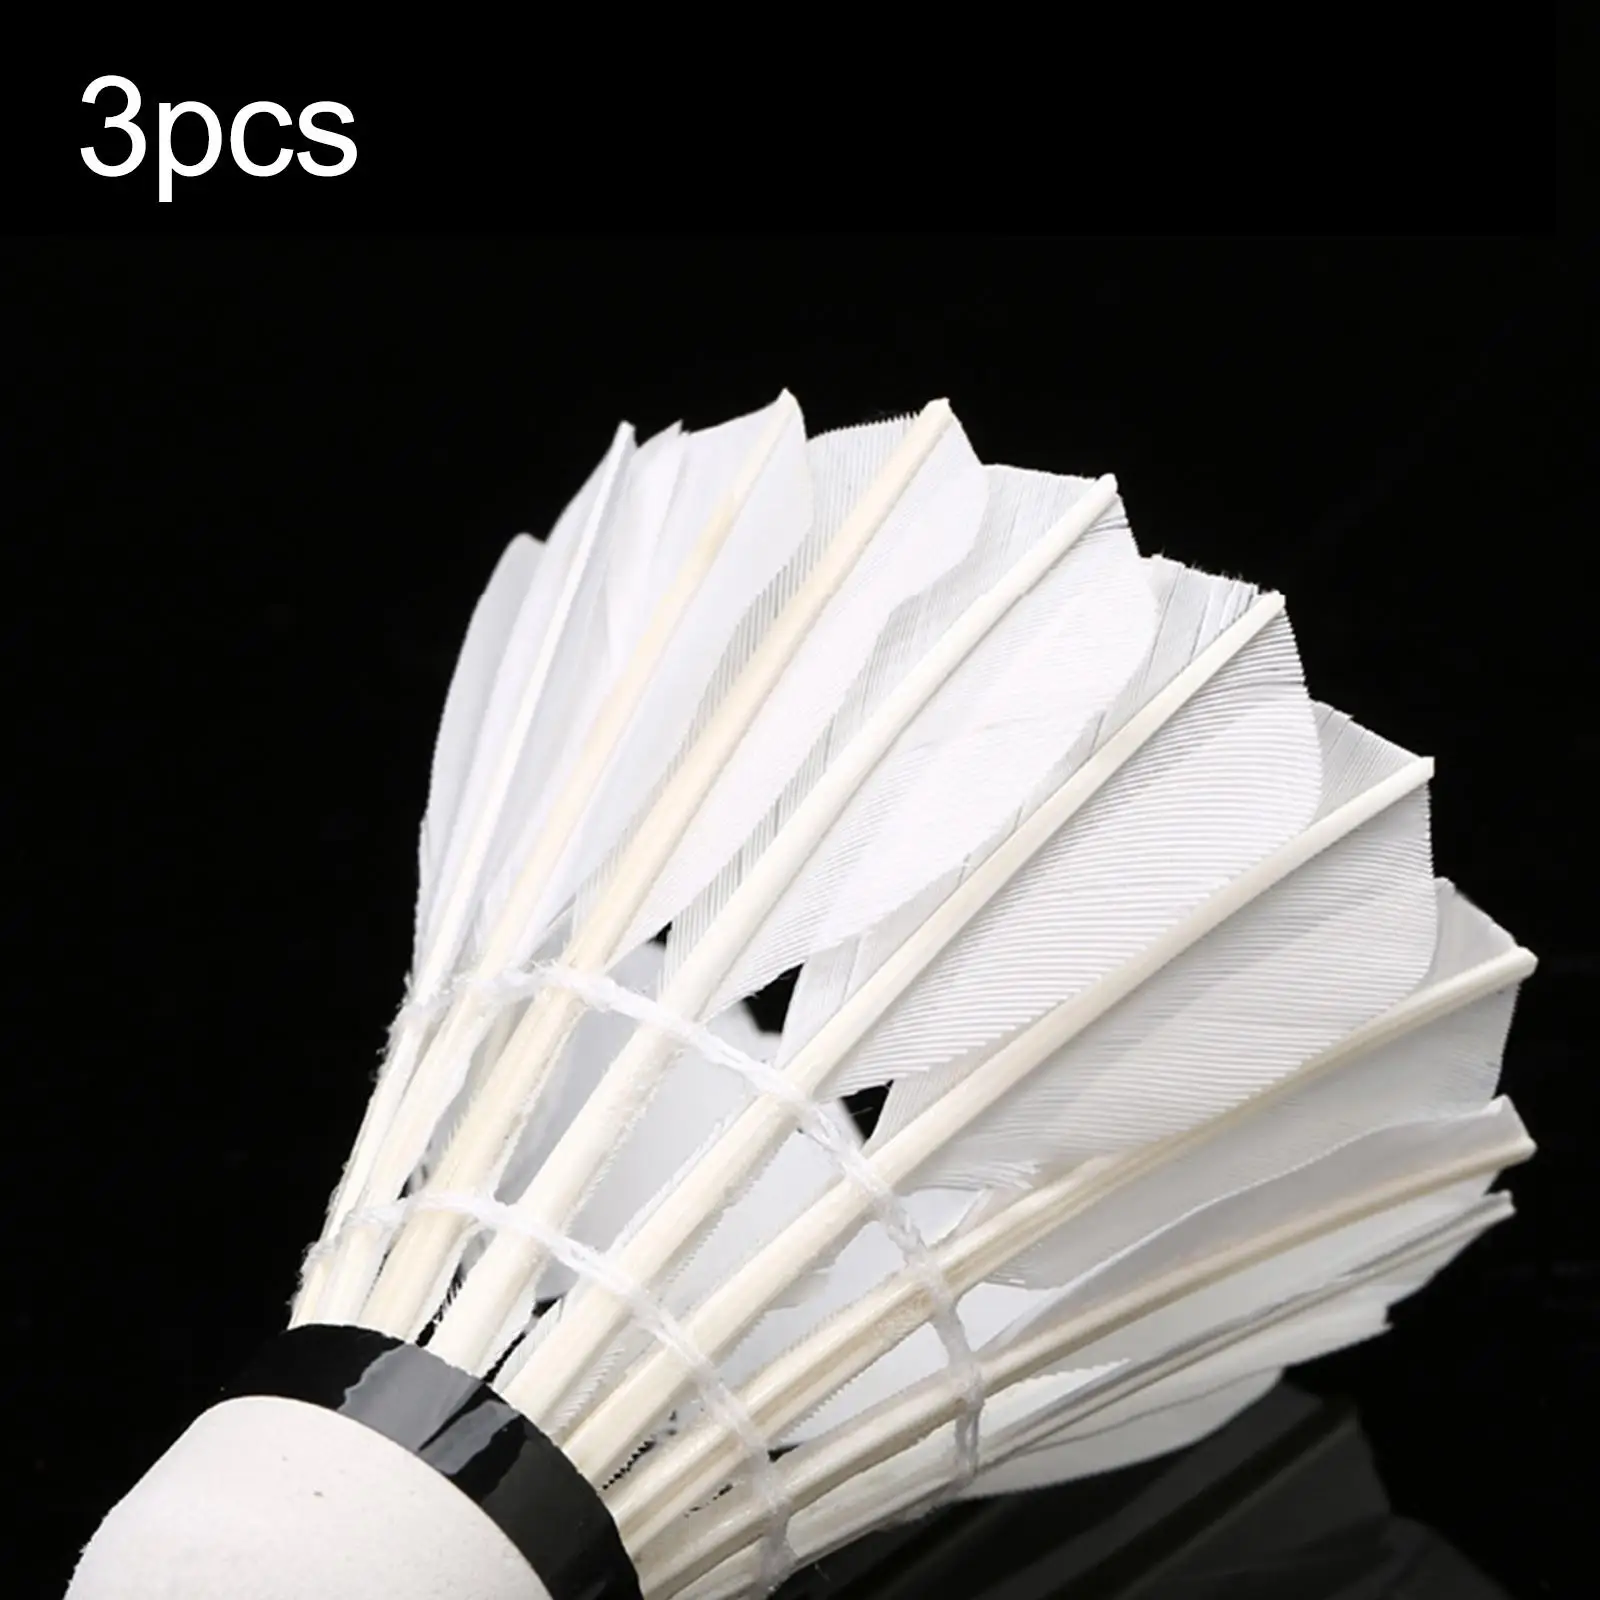 3Pcs Badminton Shuttlecocks White for Practice Sport Recreational Game Play